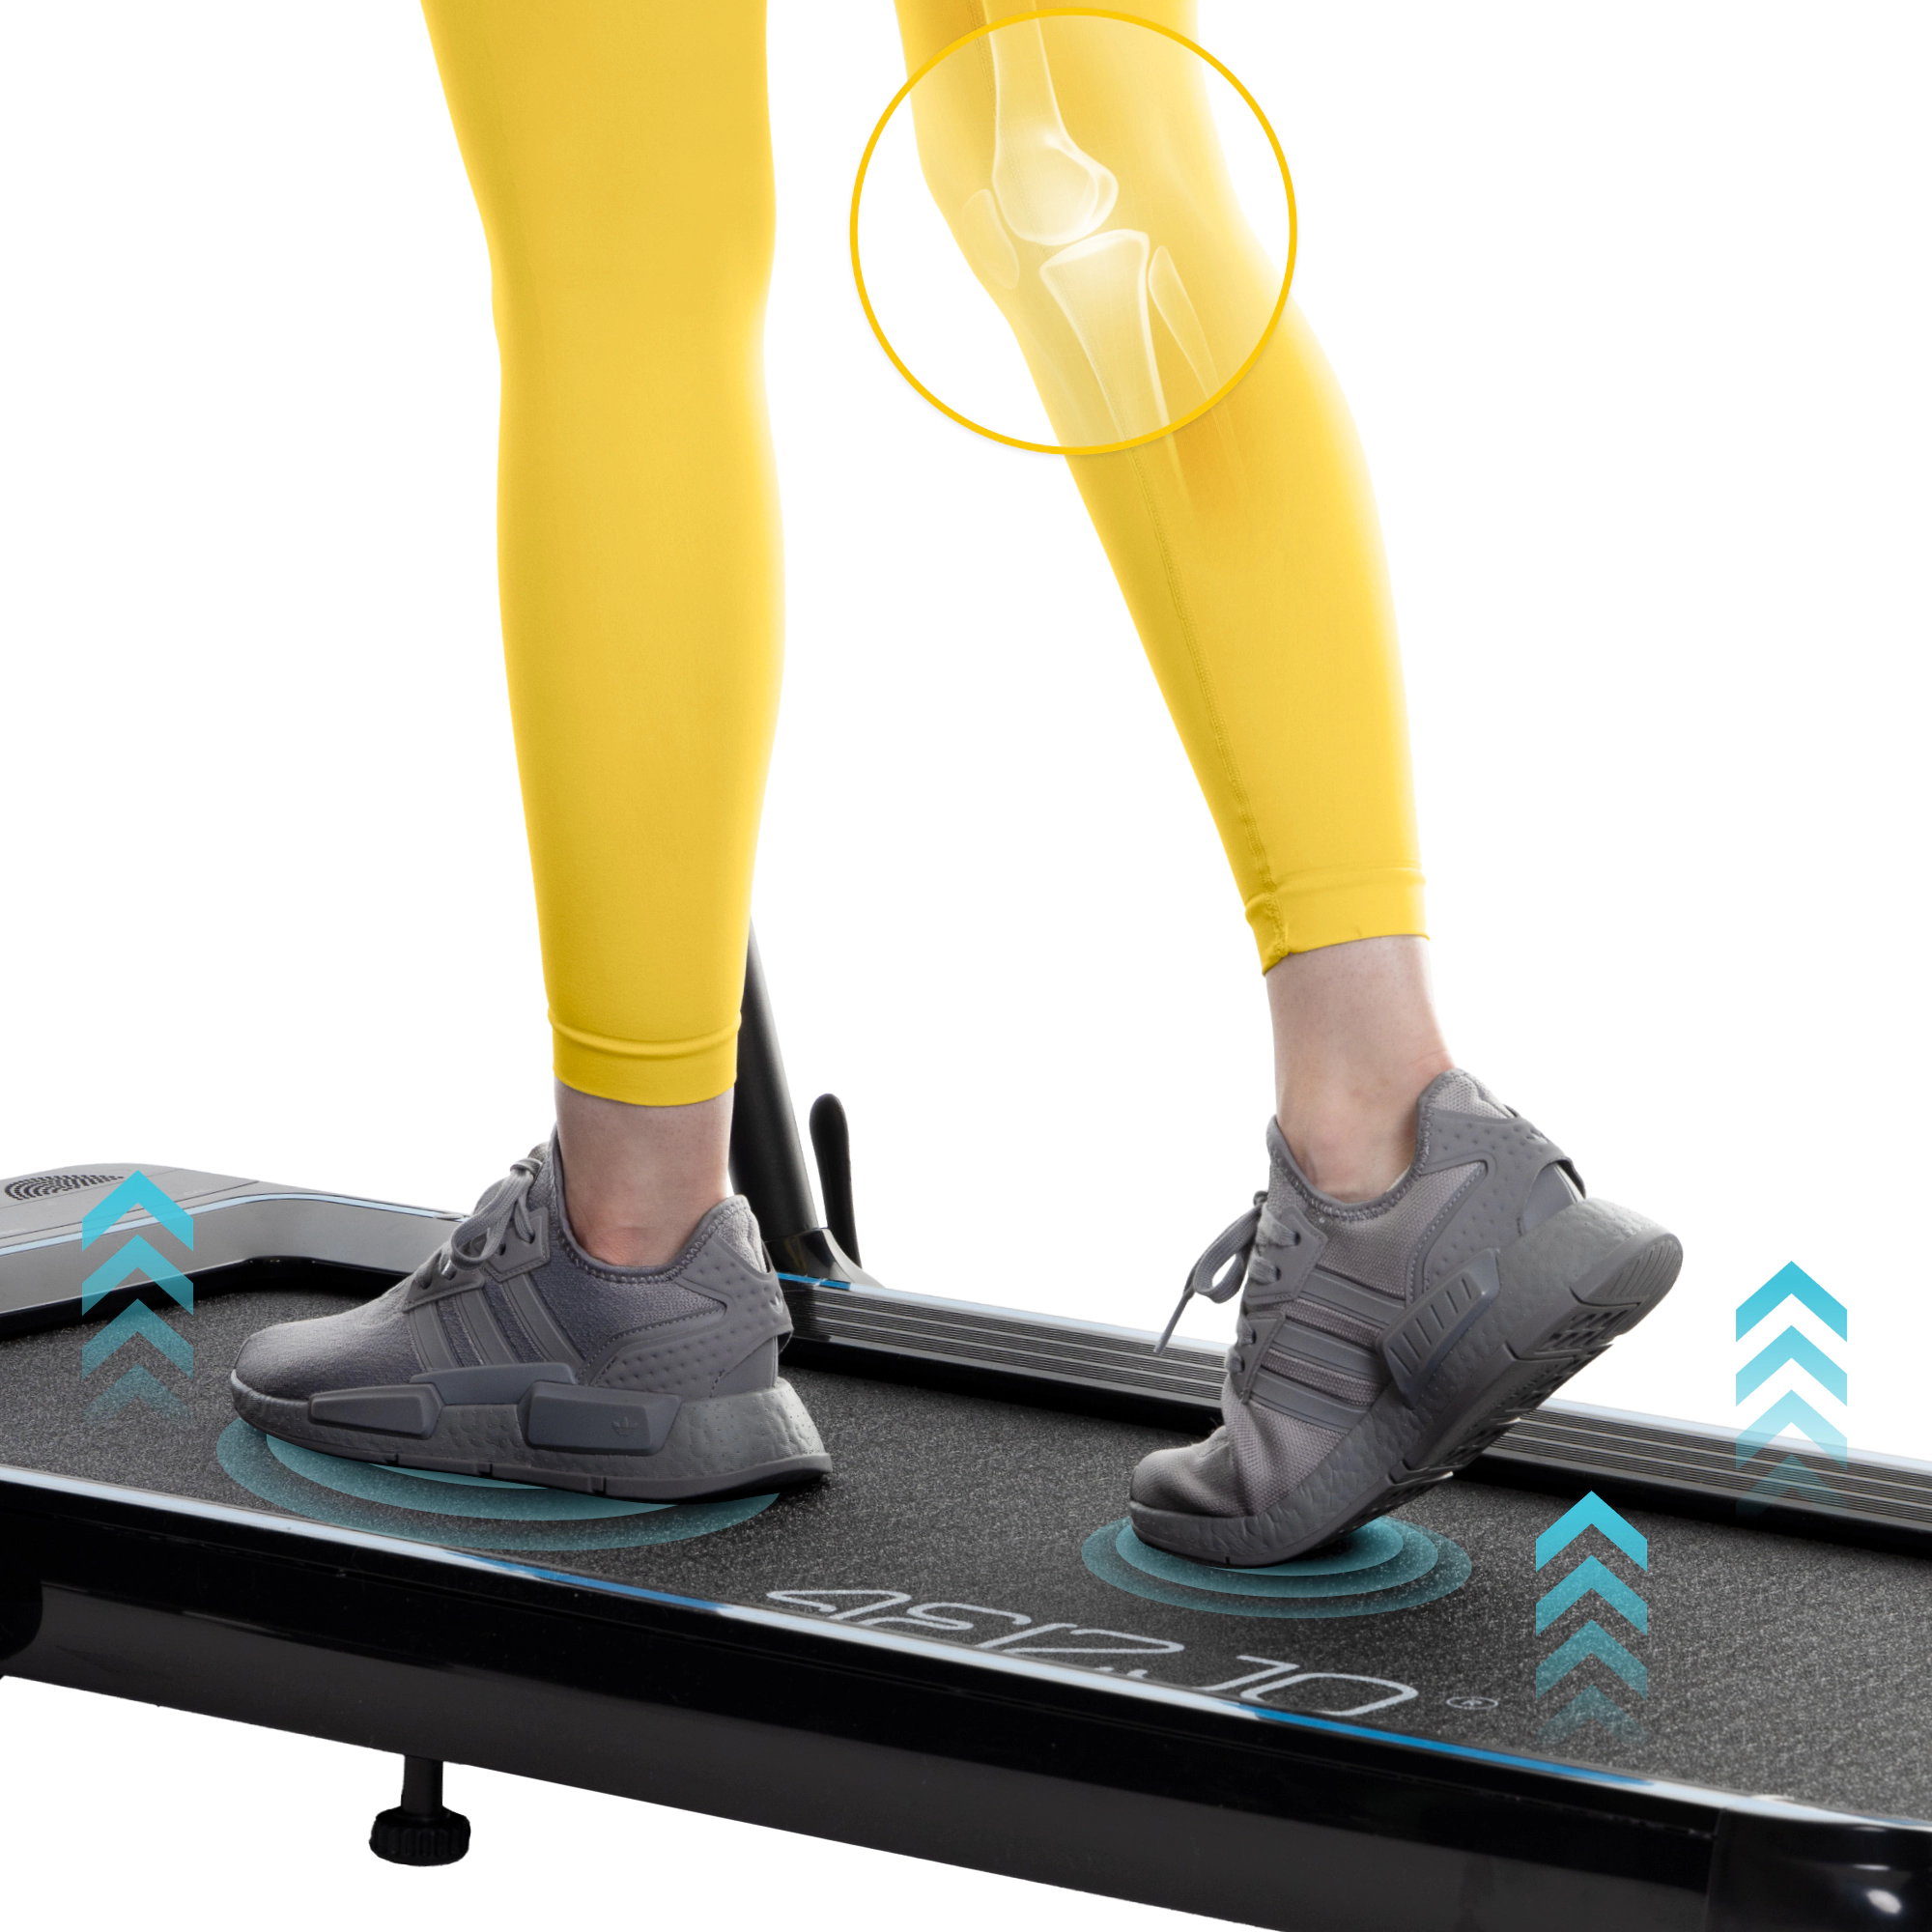 bieznia elektryczna domowa pod biurko do chodzenia biegania skladana praktyczna aplikacja smart amortyzacja